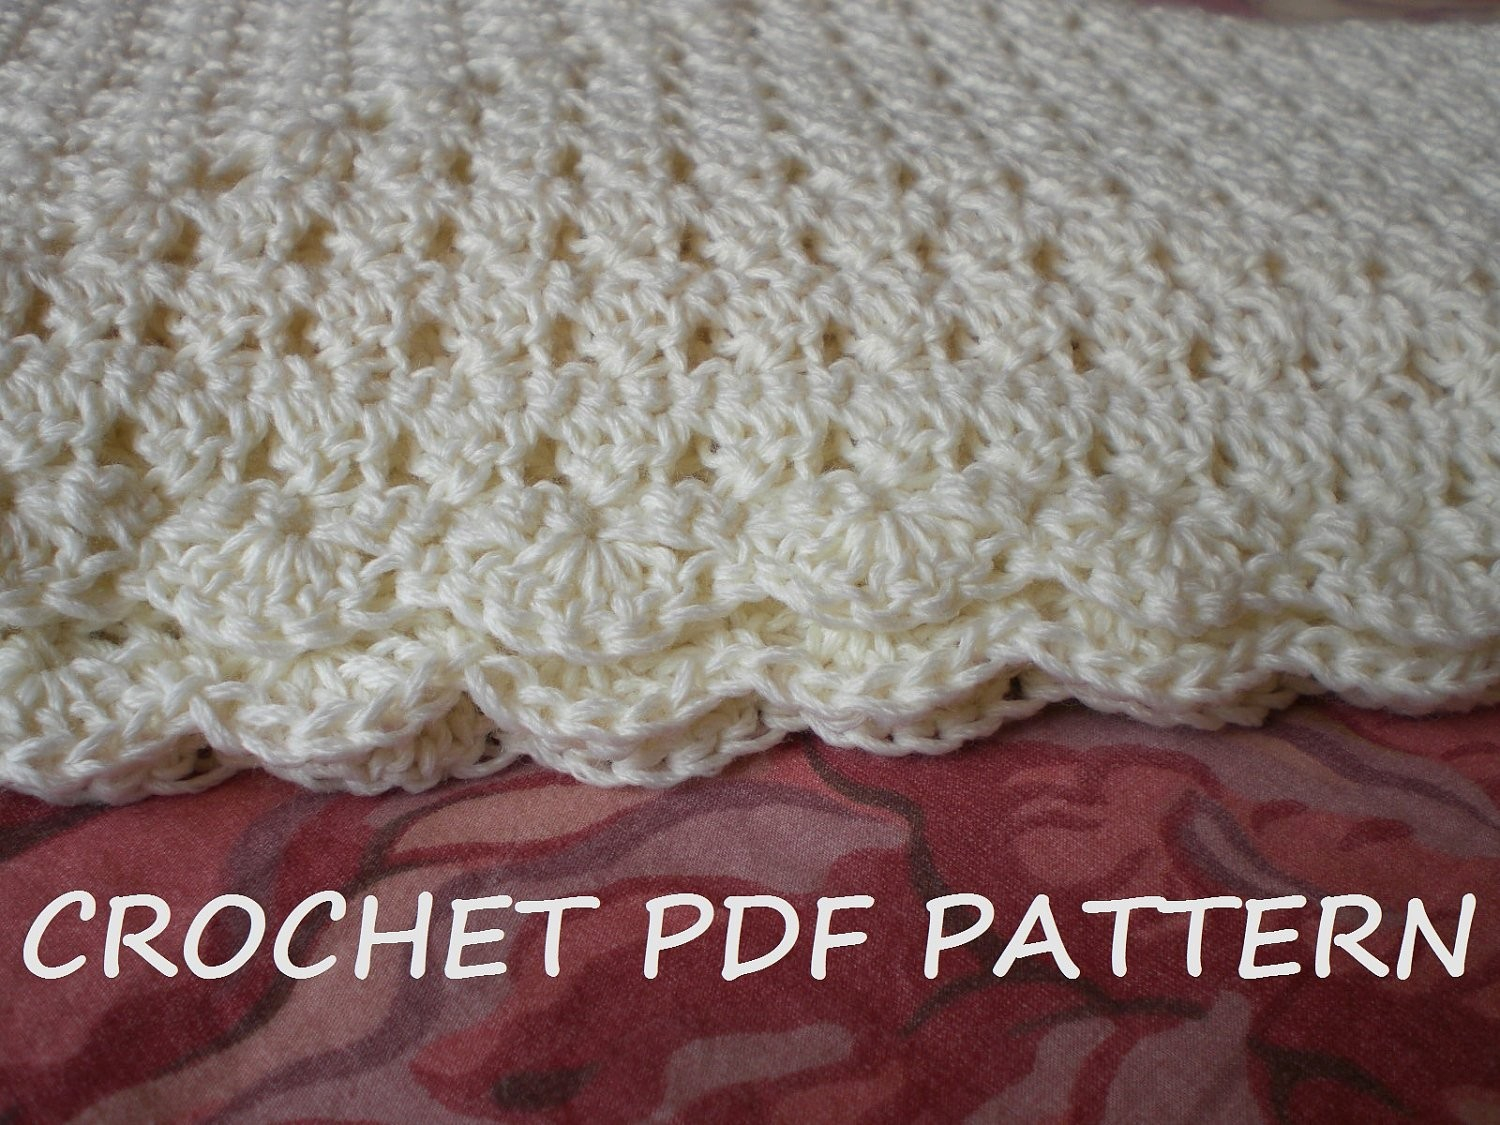 Crochet Baby Shawls Free Patterns Crochet Stitches For Ba Blankets Blanket Pattern Pdf 020 Etsy